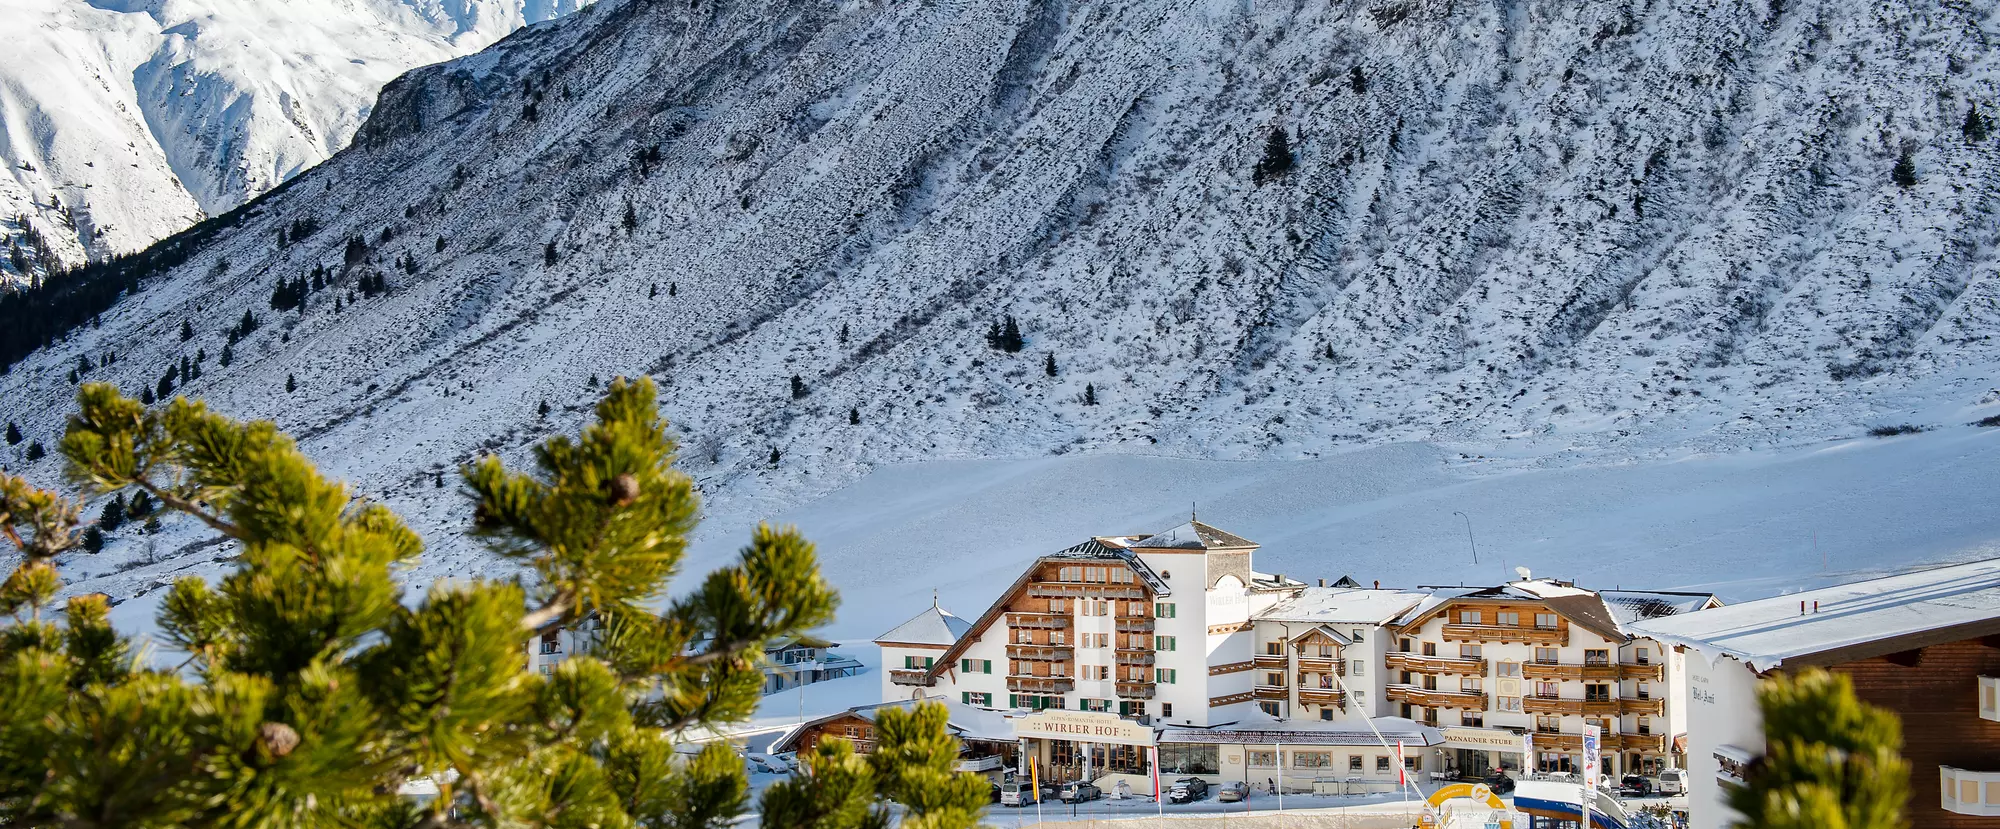 Alpen-Romantik-Hotel Wirler Hof in Galtür im Winter bei Sonnenschein